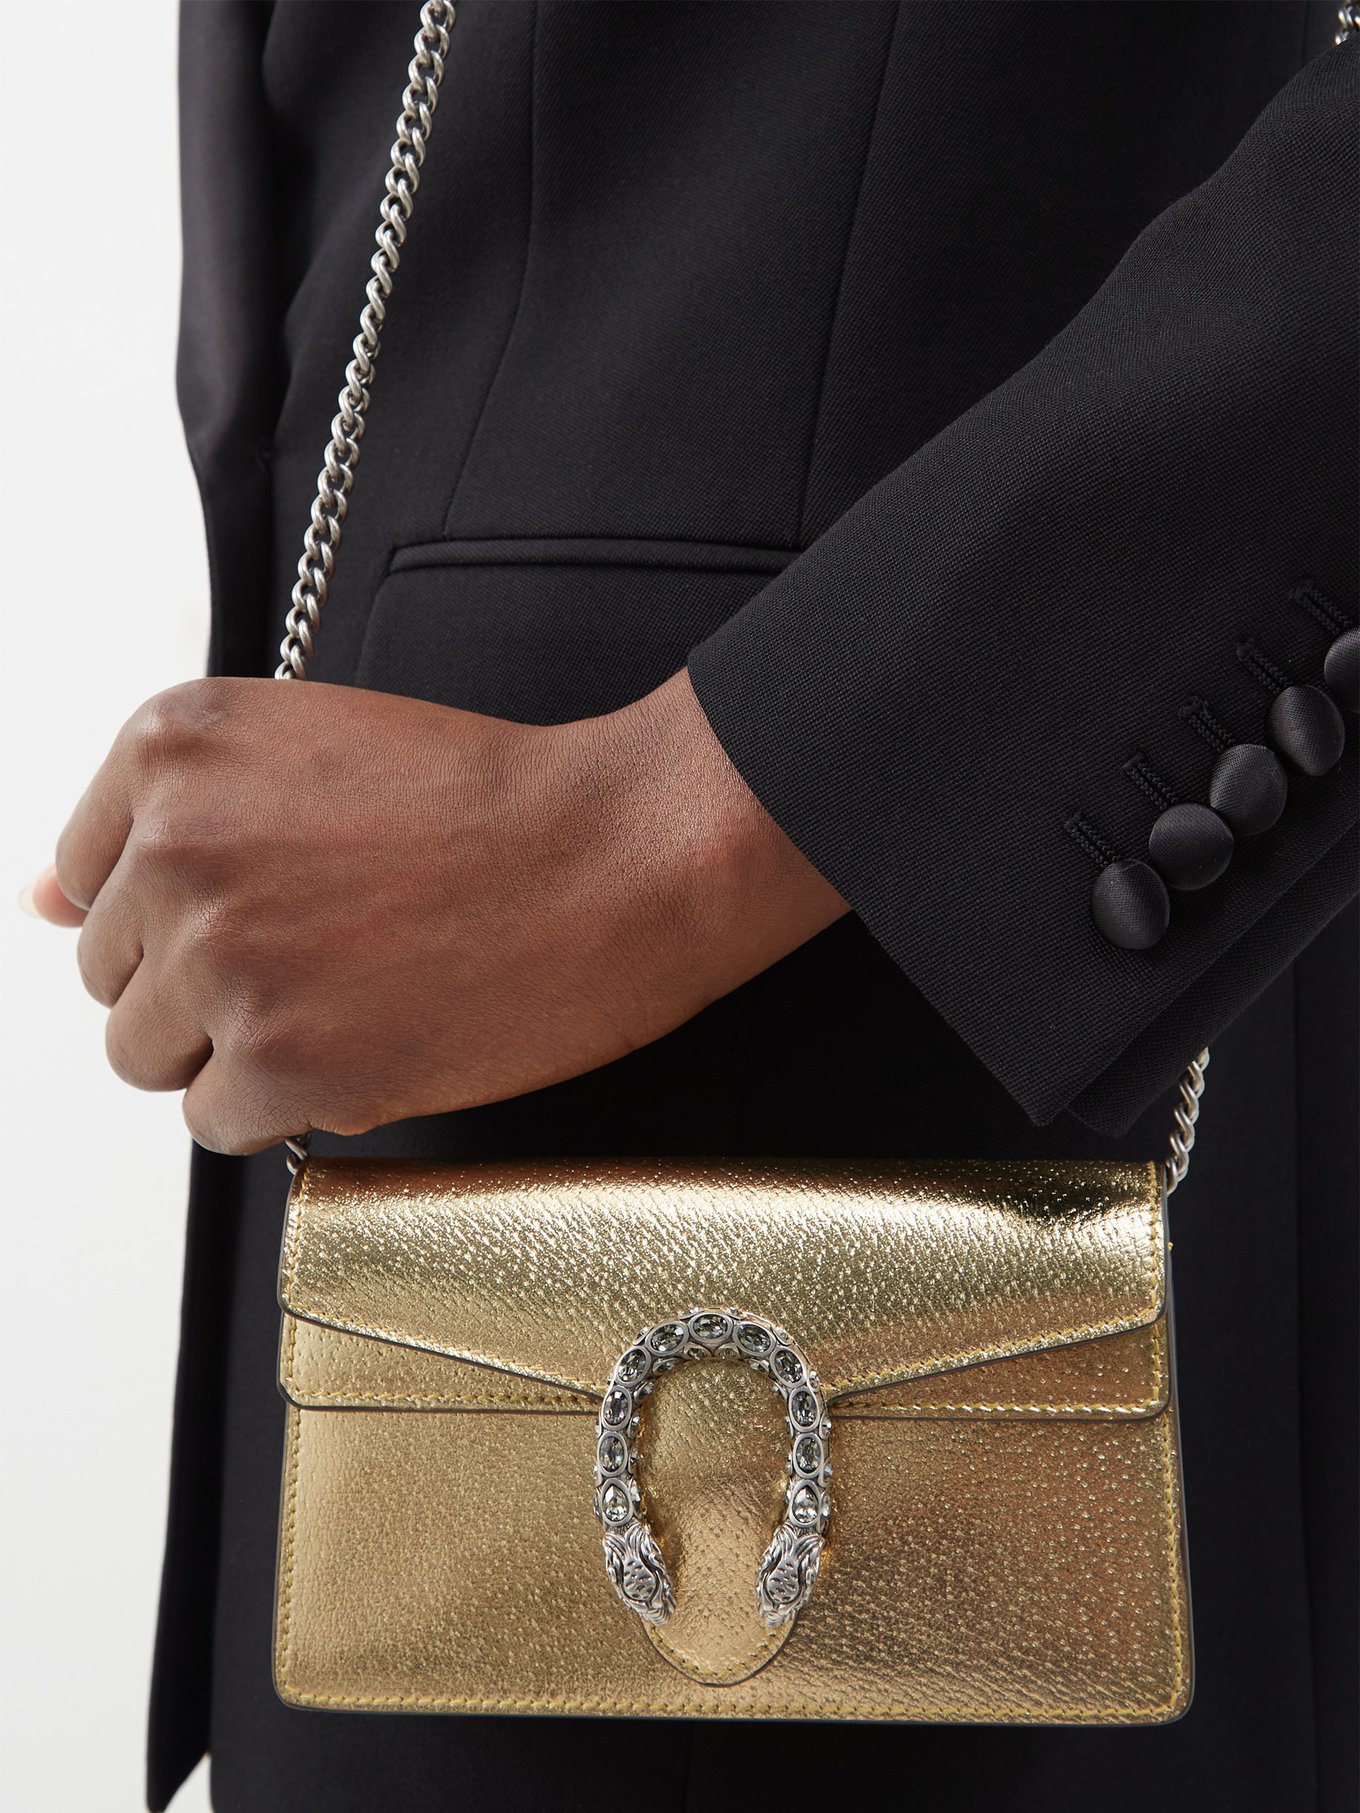 GUCCI Dionysus embellished leather shoulder bag  Bags, Leather shoulder  bag, Bags designer fashion